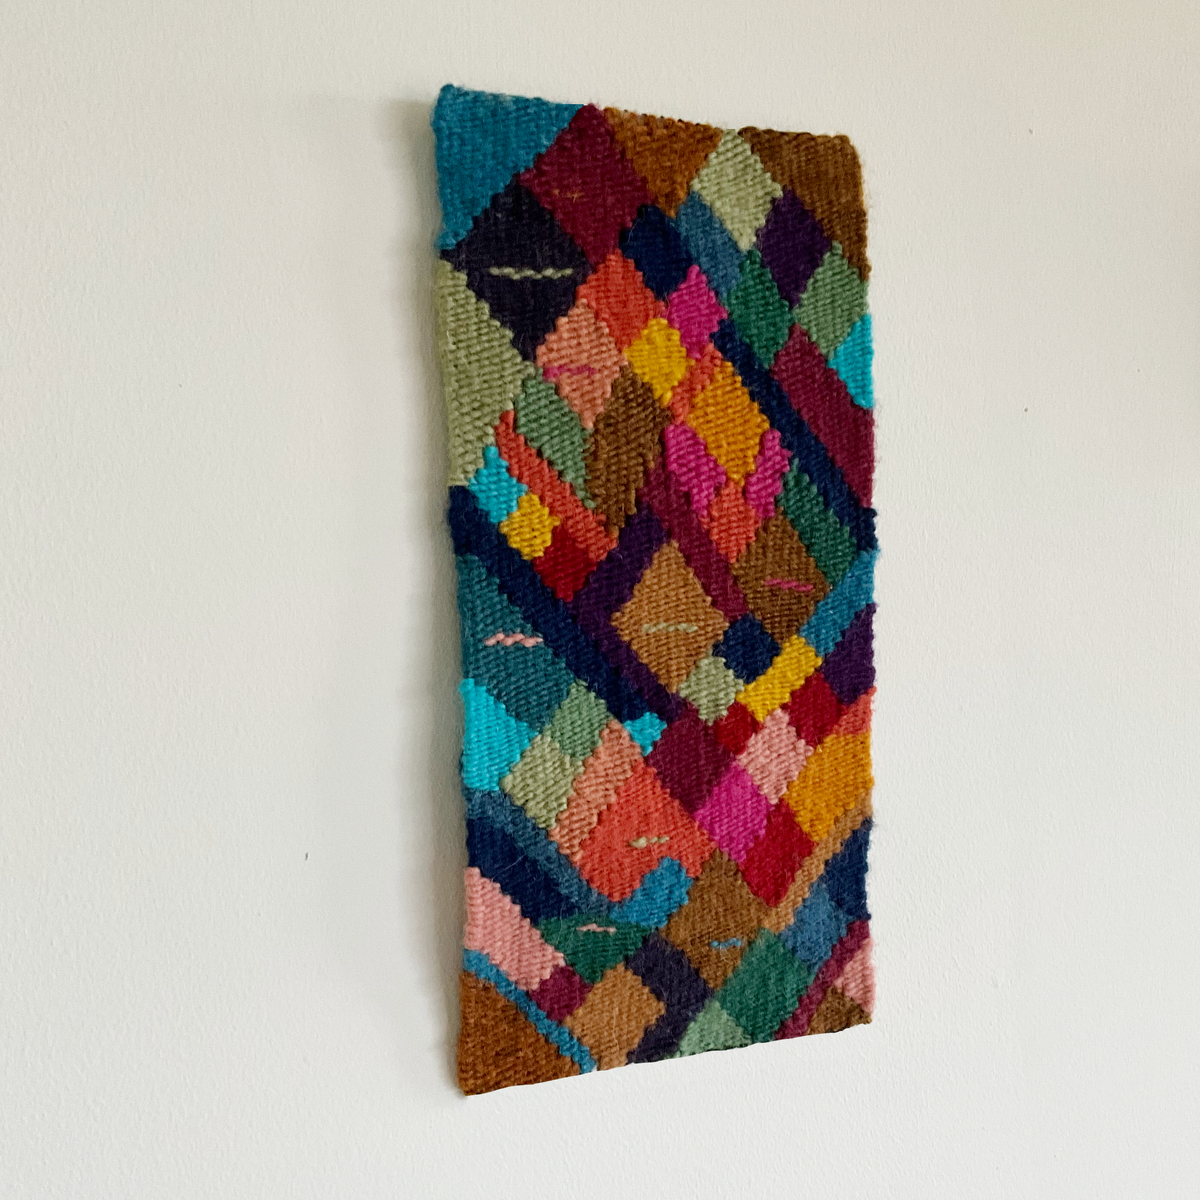 The Kaleidoscope Wedge Weave Tapestry Loom Starter Package – Mirrix Looms